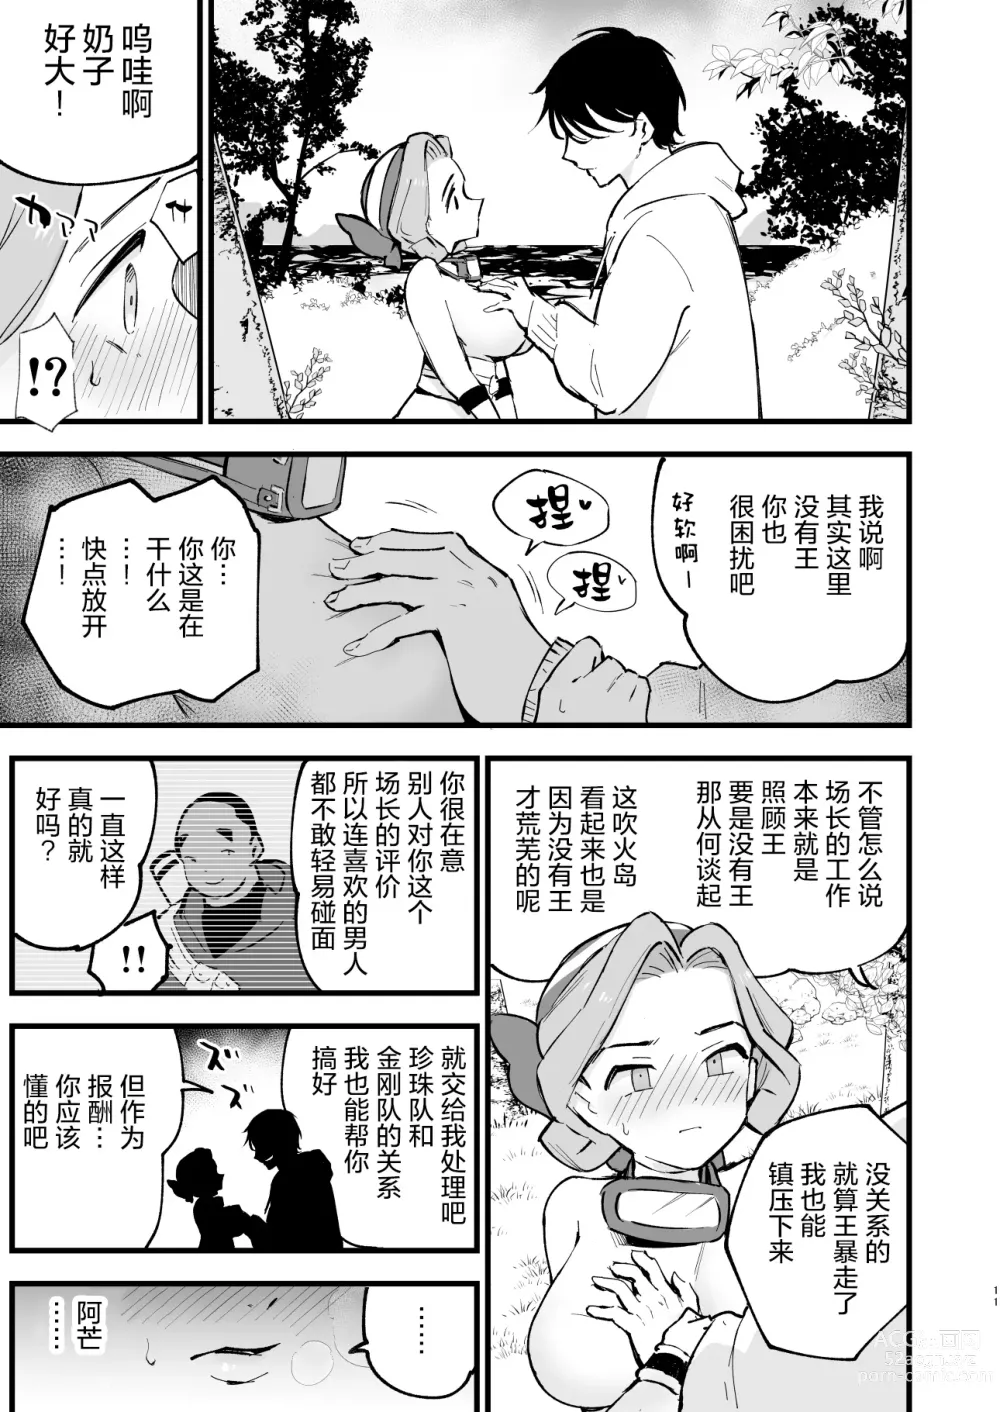 Page 12 of doujinshi Hisui Tensei-roku 3